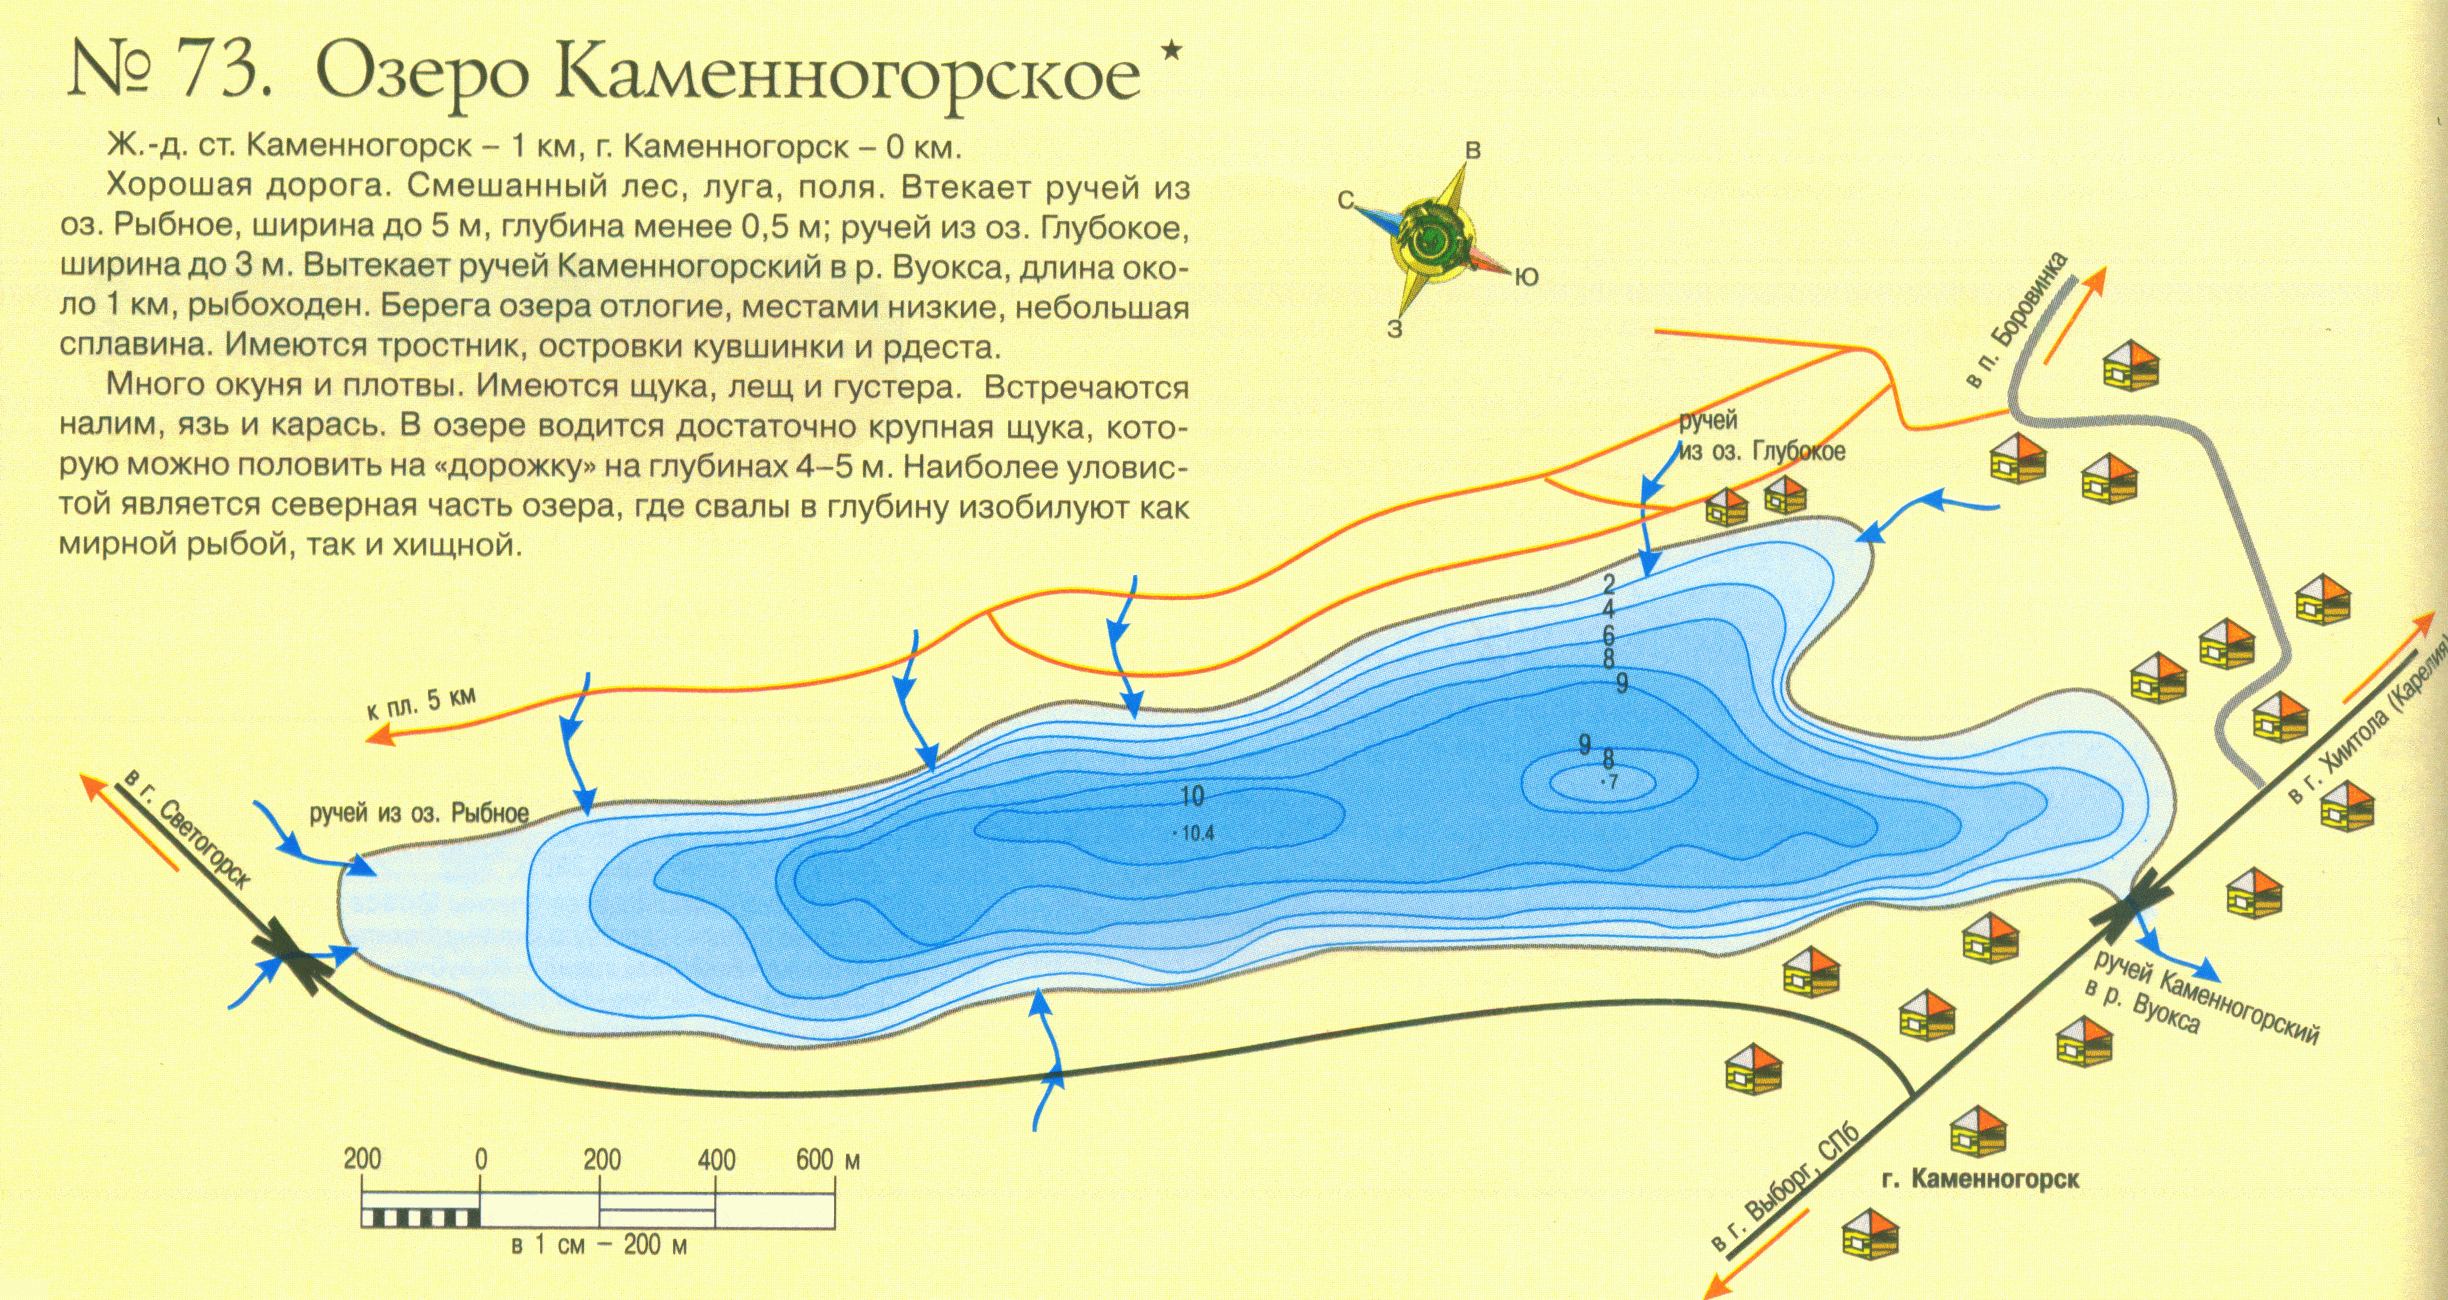 Рыбалка в ростовской области на реках, озерах, платных базах